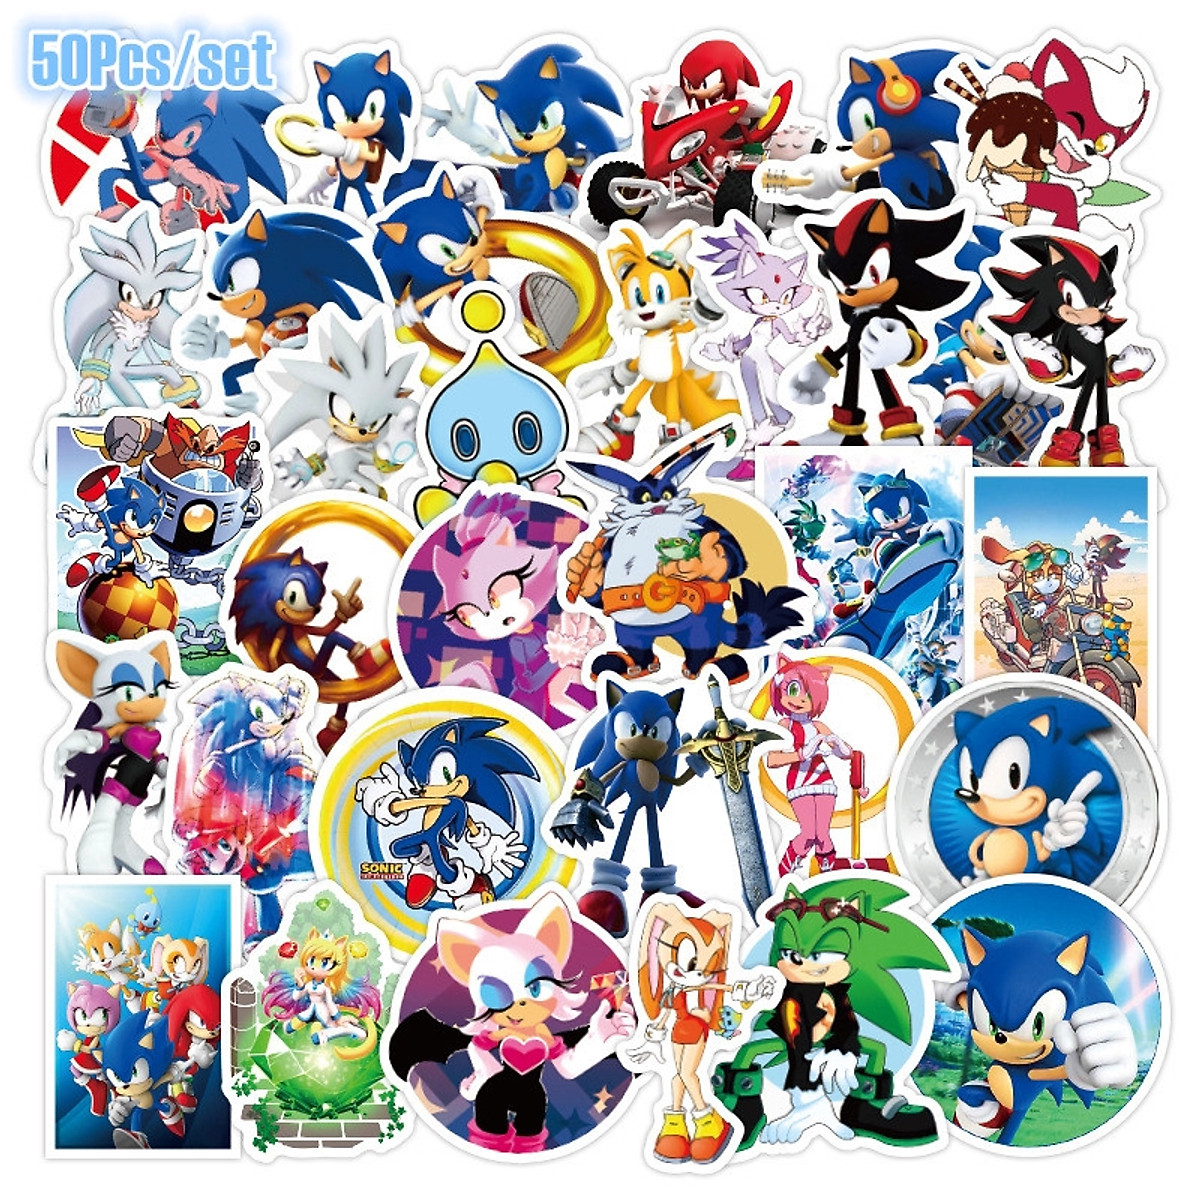 Hình nền  Bản vẽ hình minh họa Anime hoạt hình Sonic the Hedgehog Âm  thanh Shadow the Hedgehog Phác hoạ phông chữ Mangaka Ngựa như động vật  có vú 1646x988 